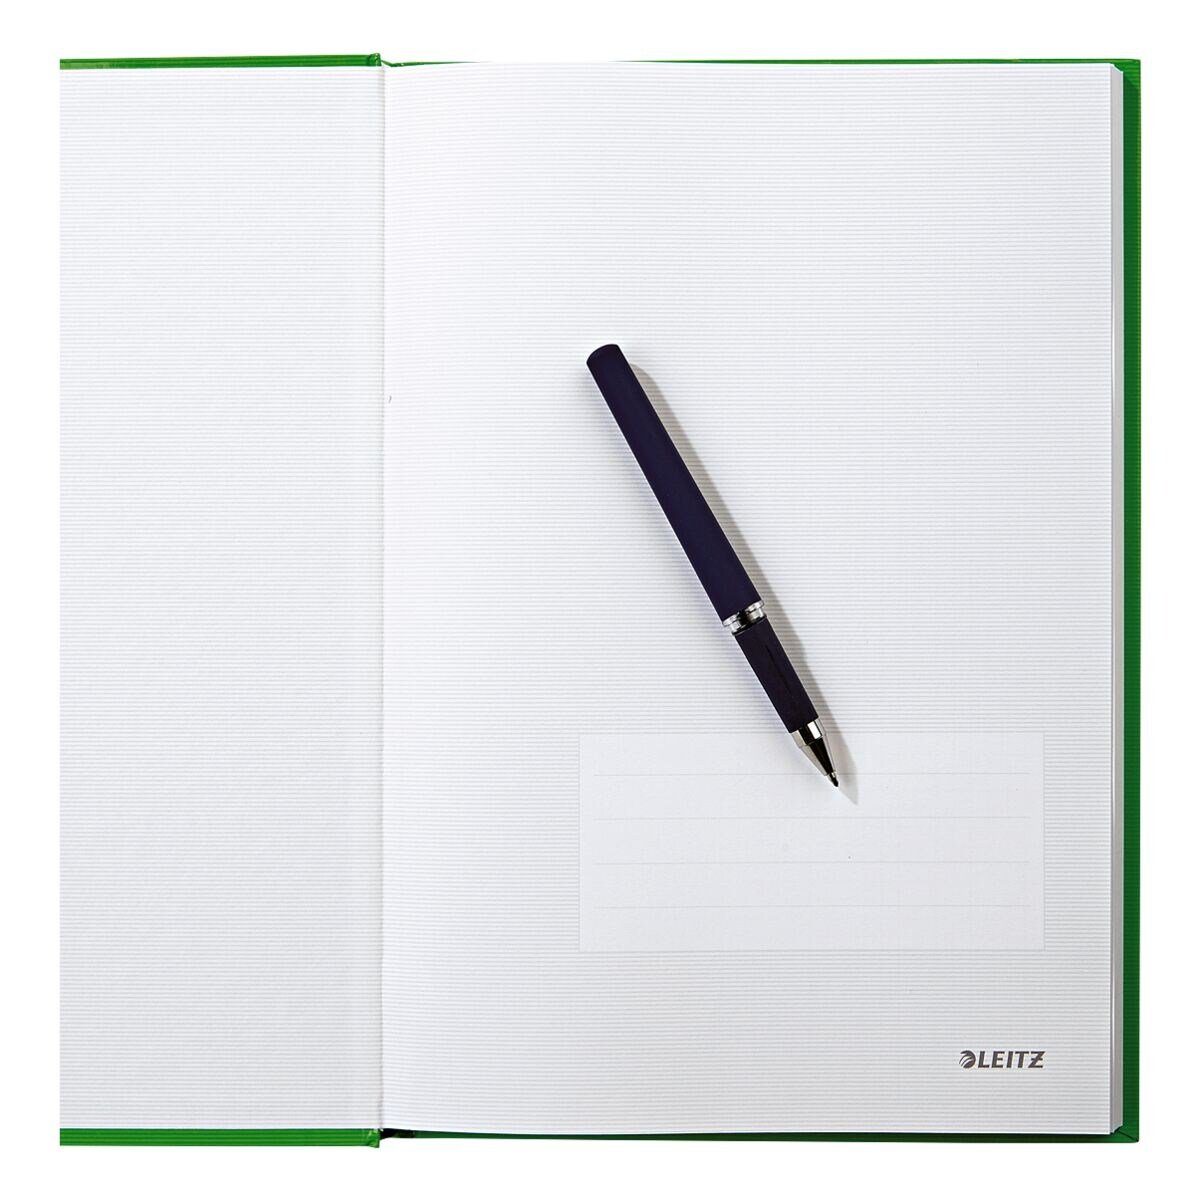 LEITZ Notizbuch Solid 4666, kariert, Introseiten, Hardcover hellgrün mit